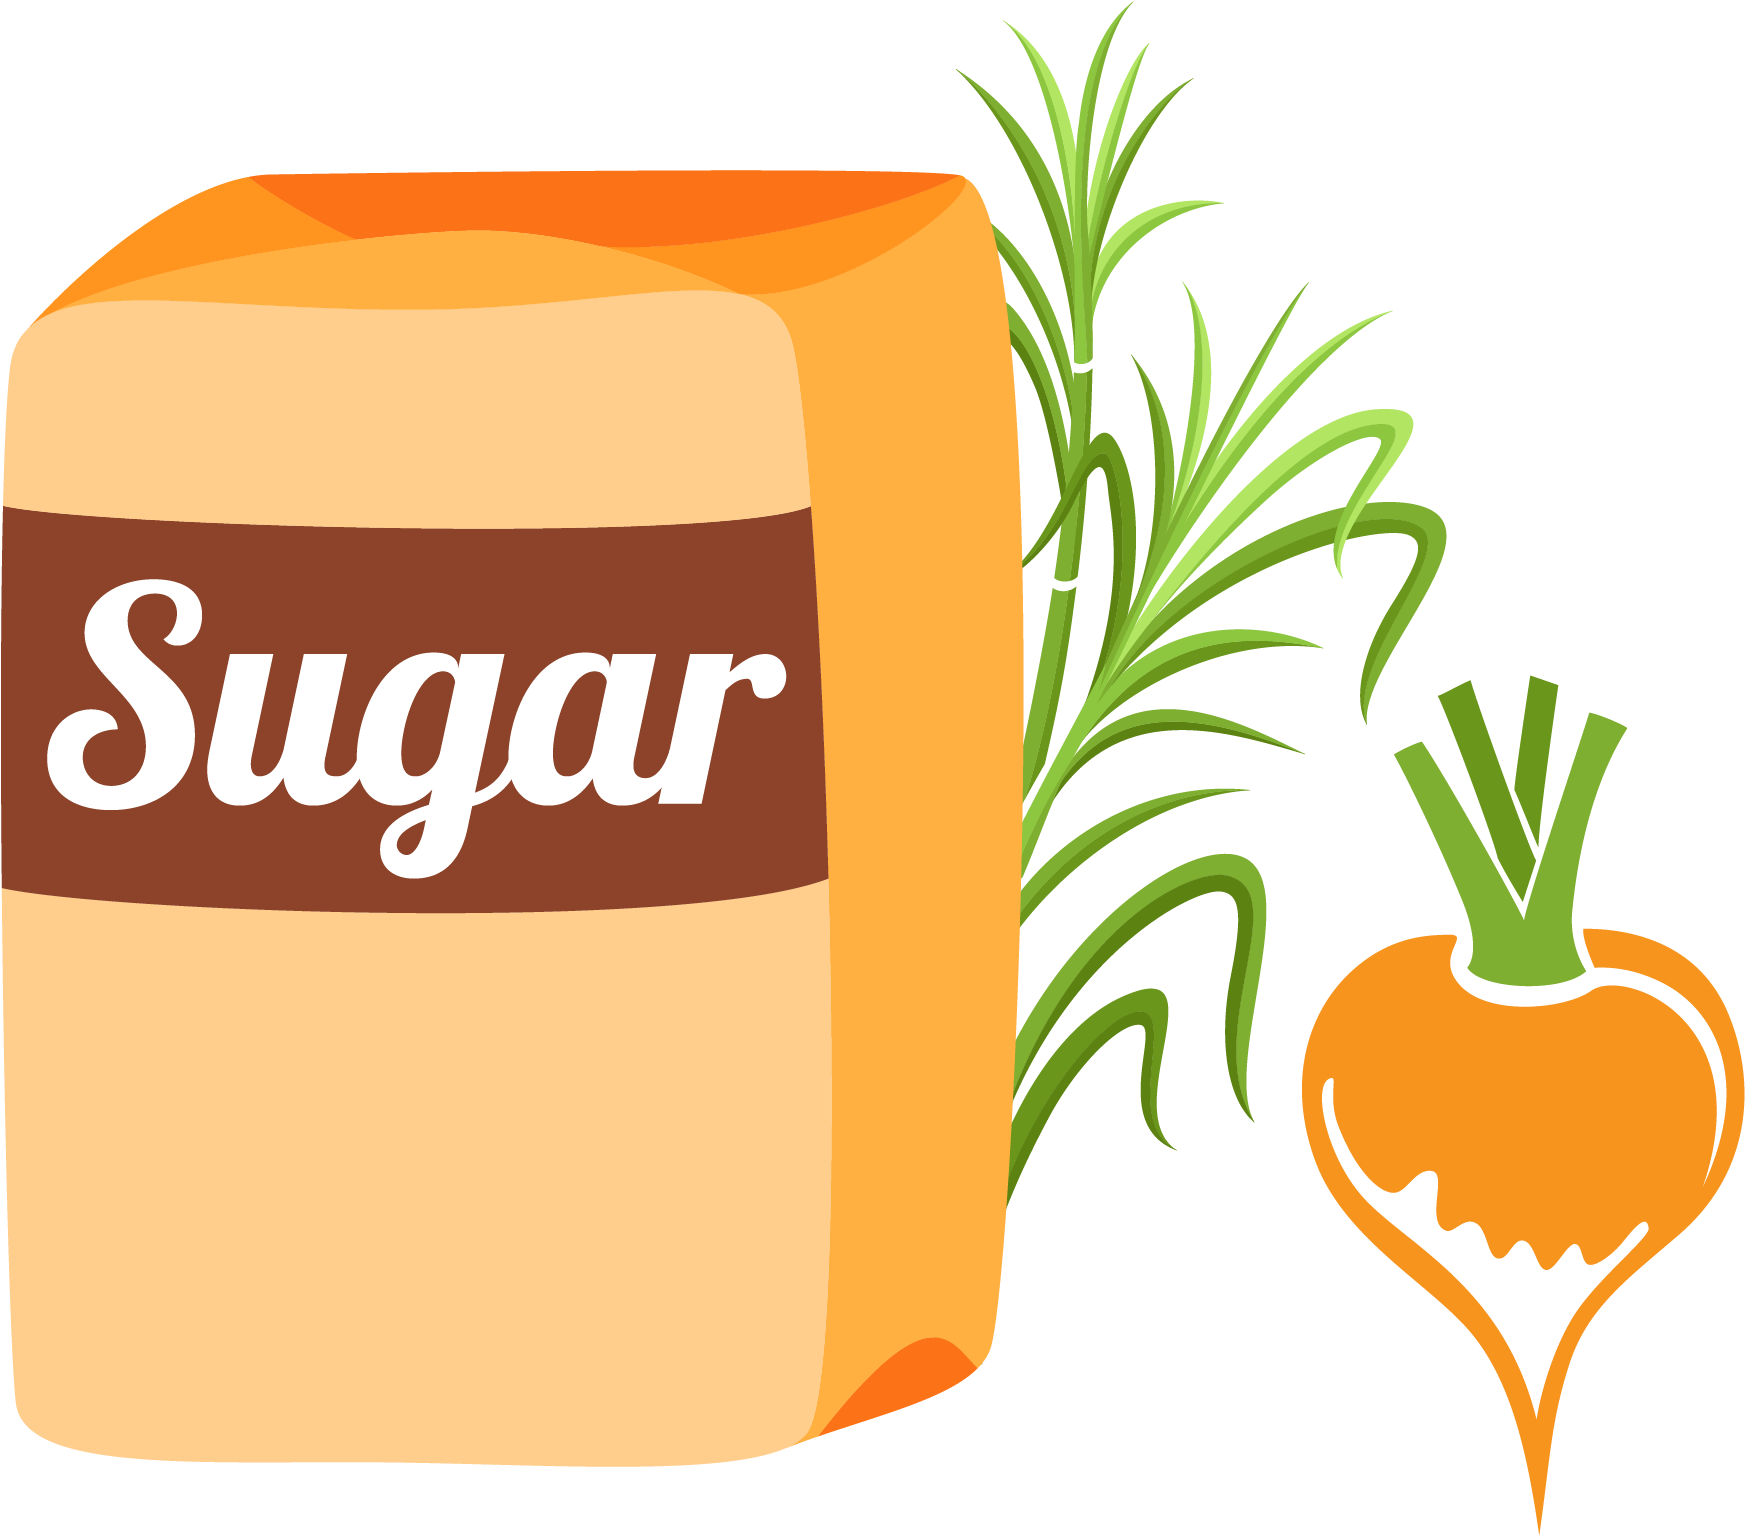 Logo de la sucre brune PNG Image Fond